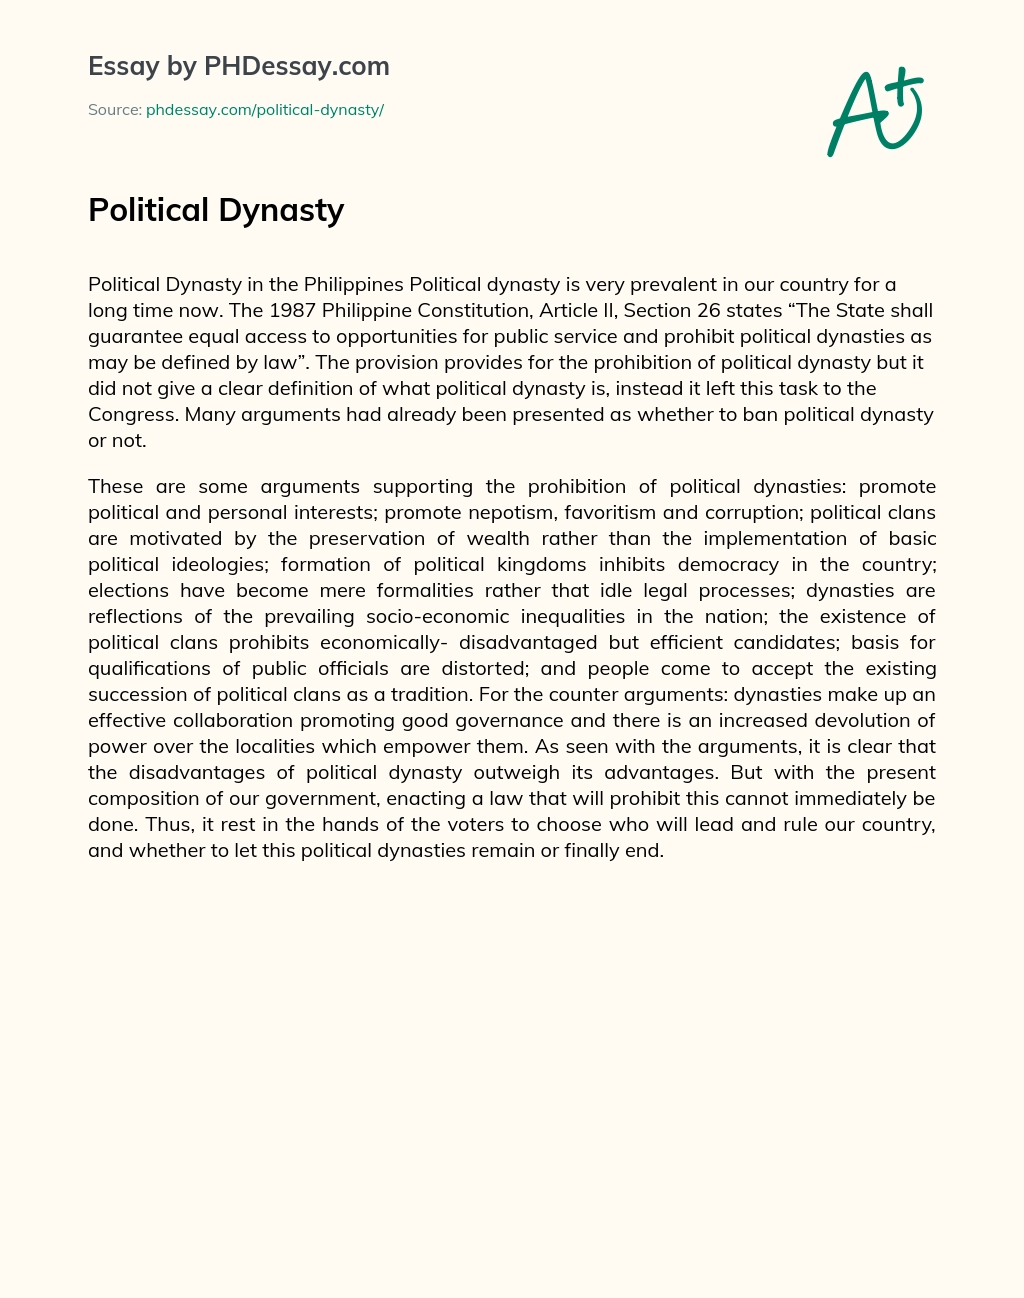 essay on political dynasty